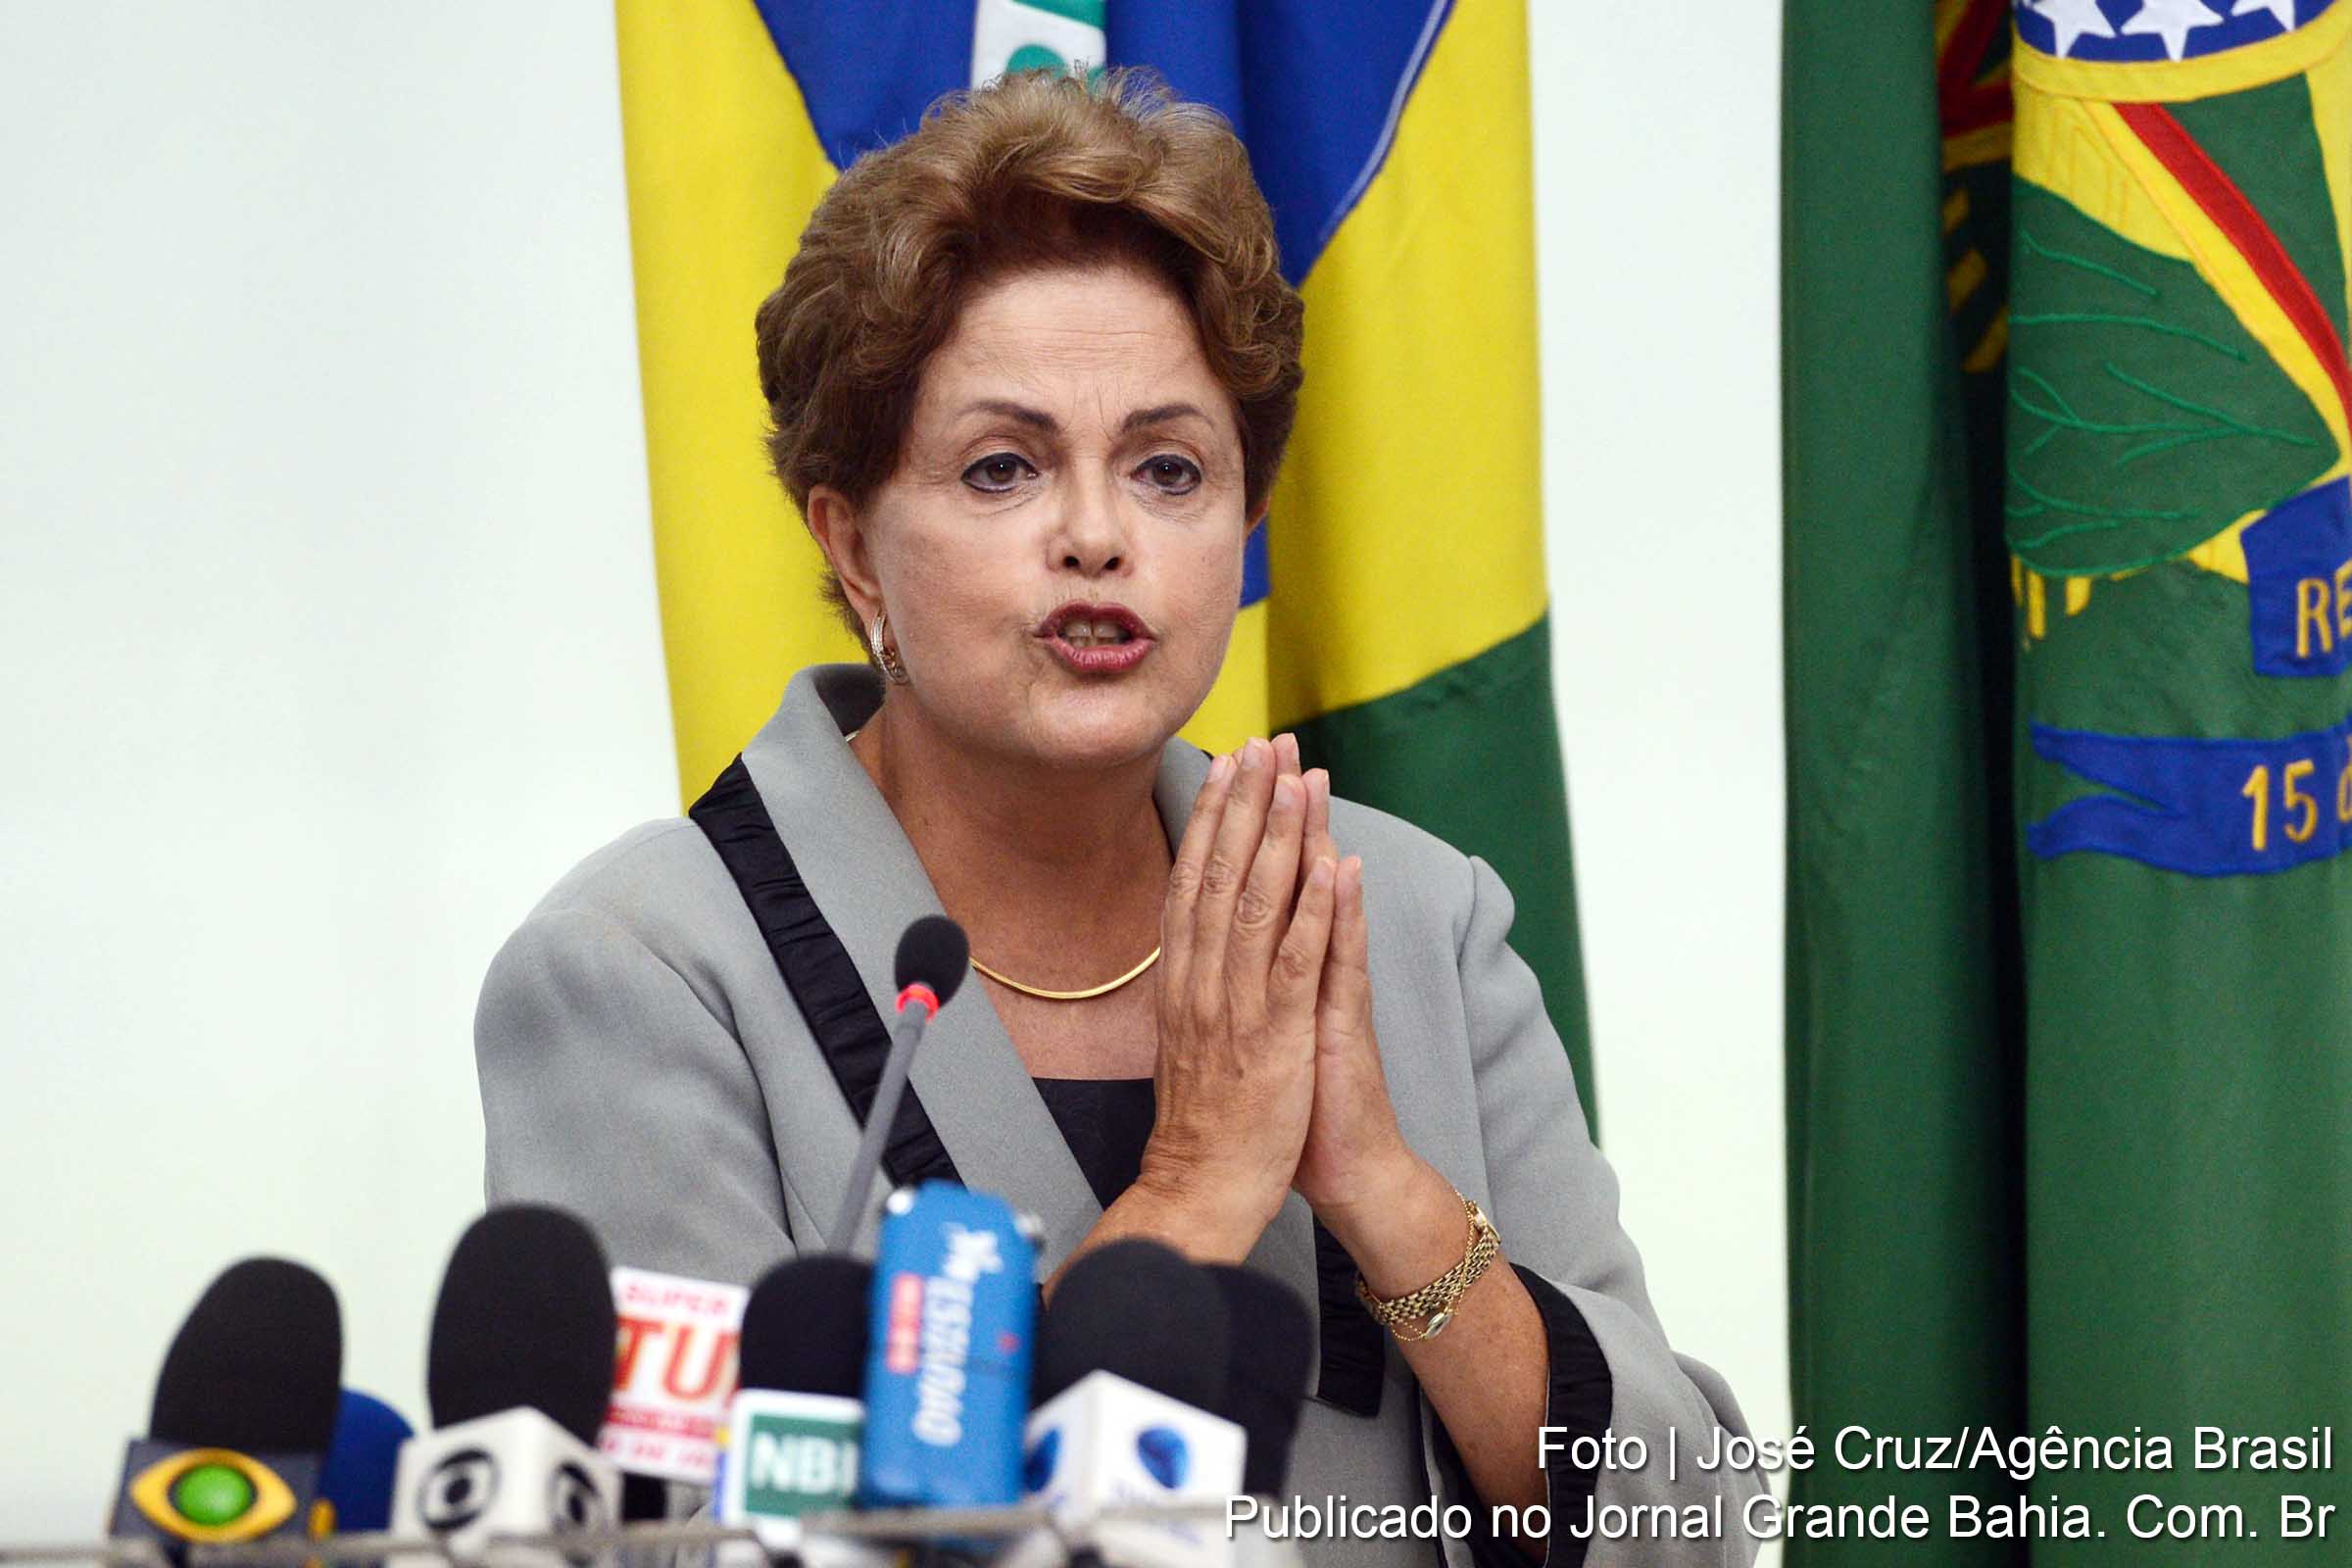 Falta de perfil negociador para lidar com o Congresso e restrições dentro do próprio PT complicam situação da presidenta Dilma Rousseff no momento em que ela enfrenta escândalos, crise econômica e até pressão por impeachment.